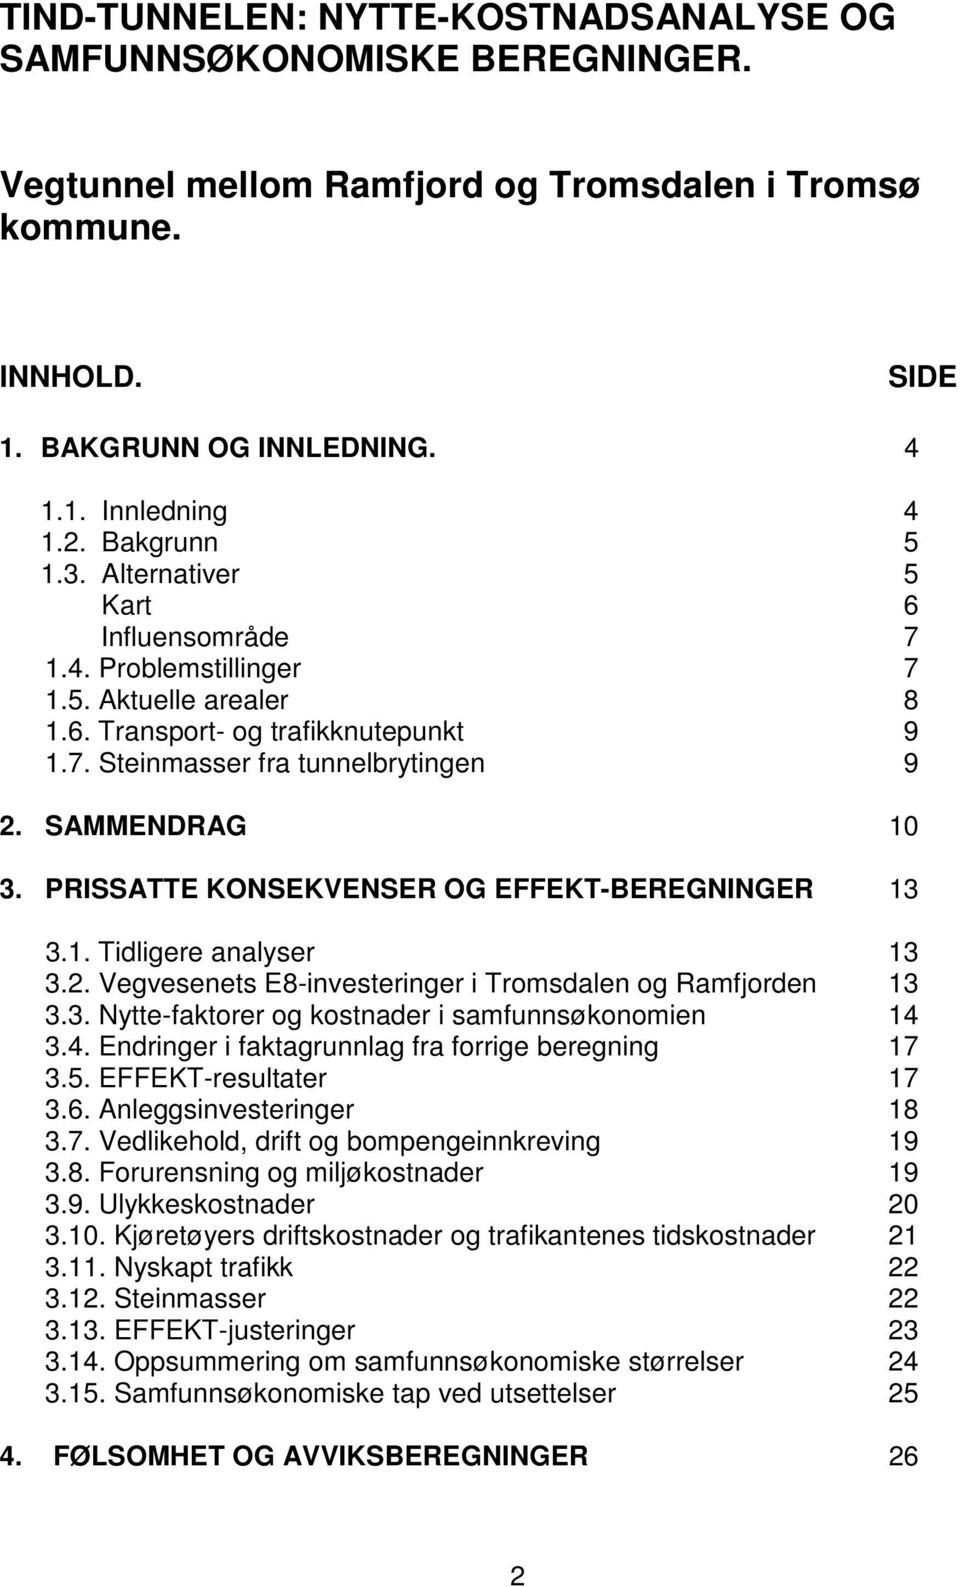 PRISSATTE KONSEKVENSER OG EFFEKT-BEREGNINGER 13 3.1. Tidligere analyser 13 3.2. Vegvesenets E8-investeringer i Tromsdalen og Ramfjorden 13 3.3. Nytte-faktorer og kostnader i samfunnsøkonomien 14 